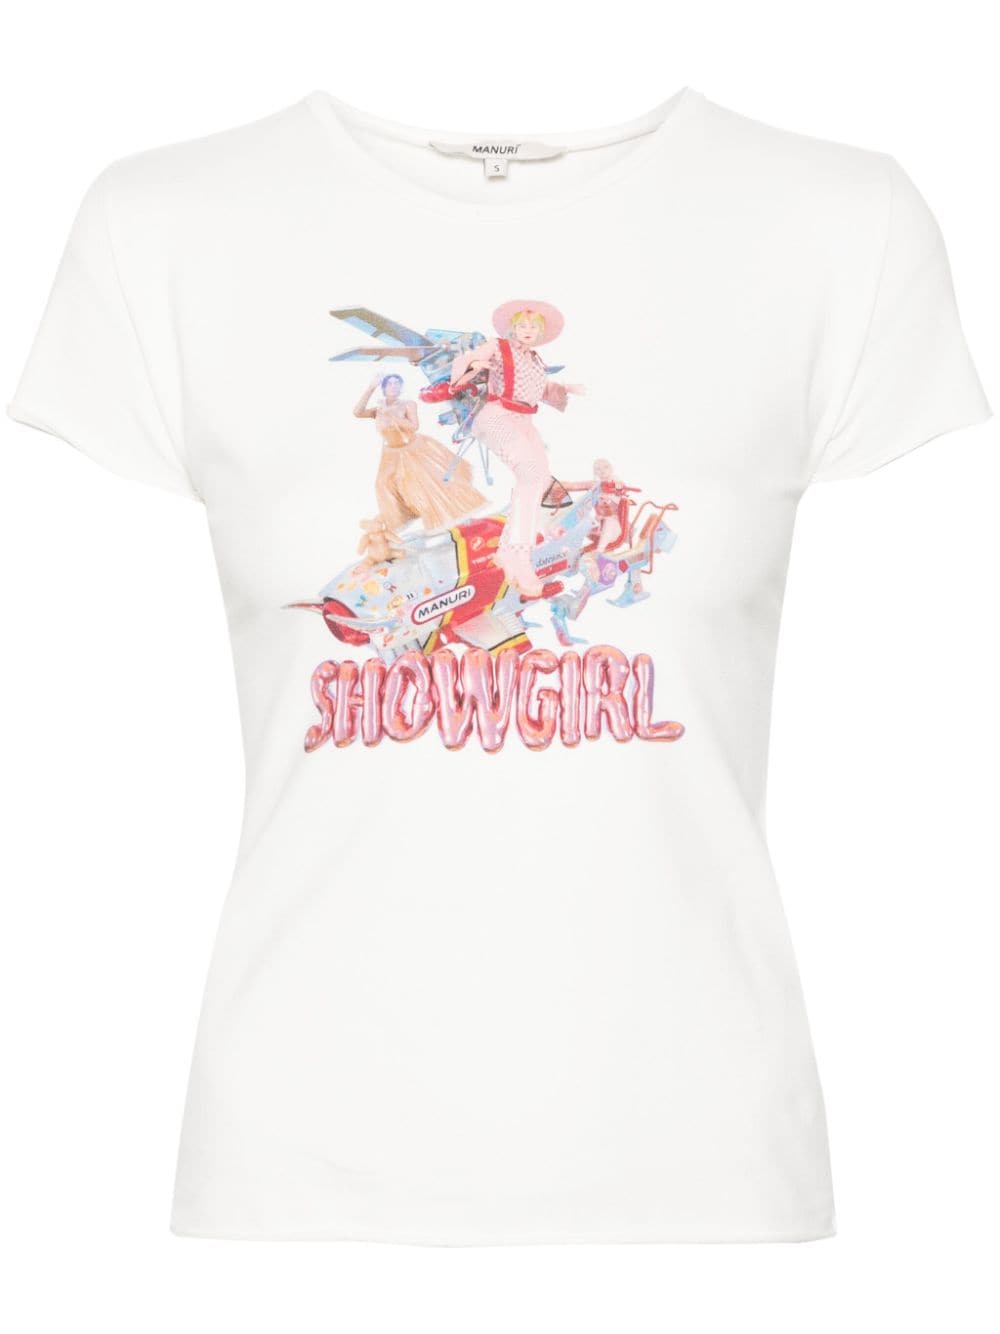 MANURI Showgirl in Space T-Shirt - Weiß von MANURI